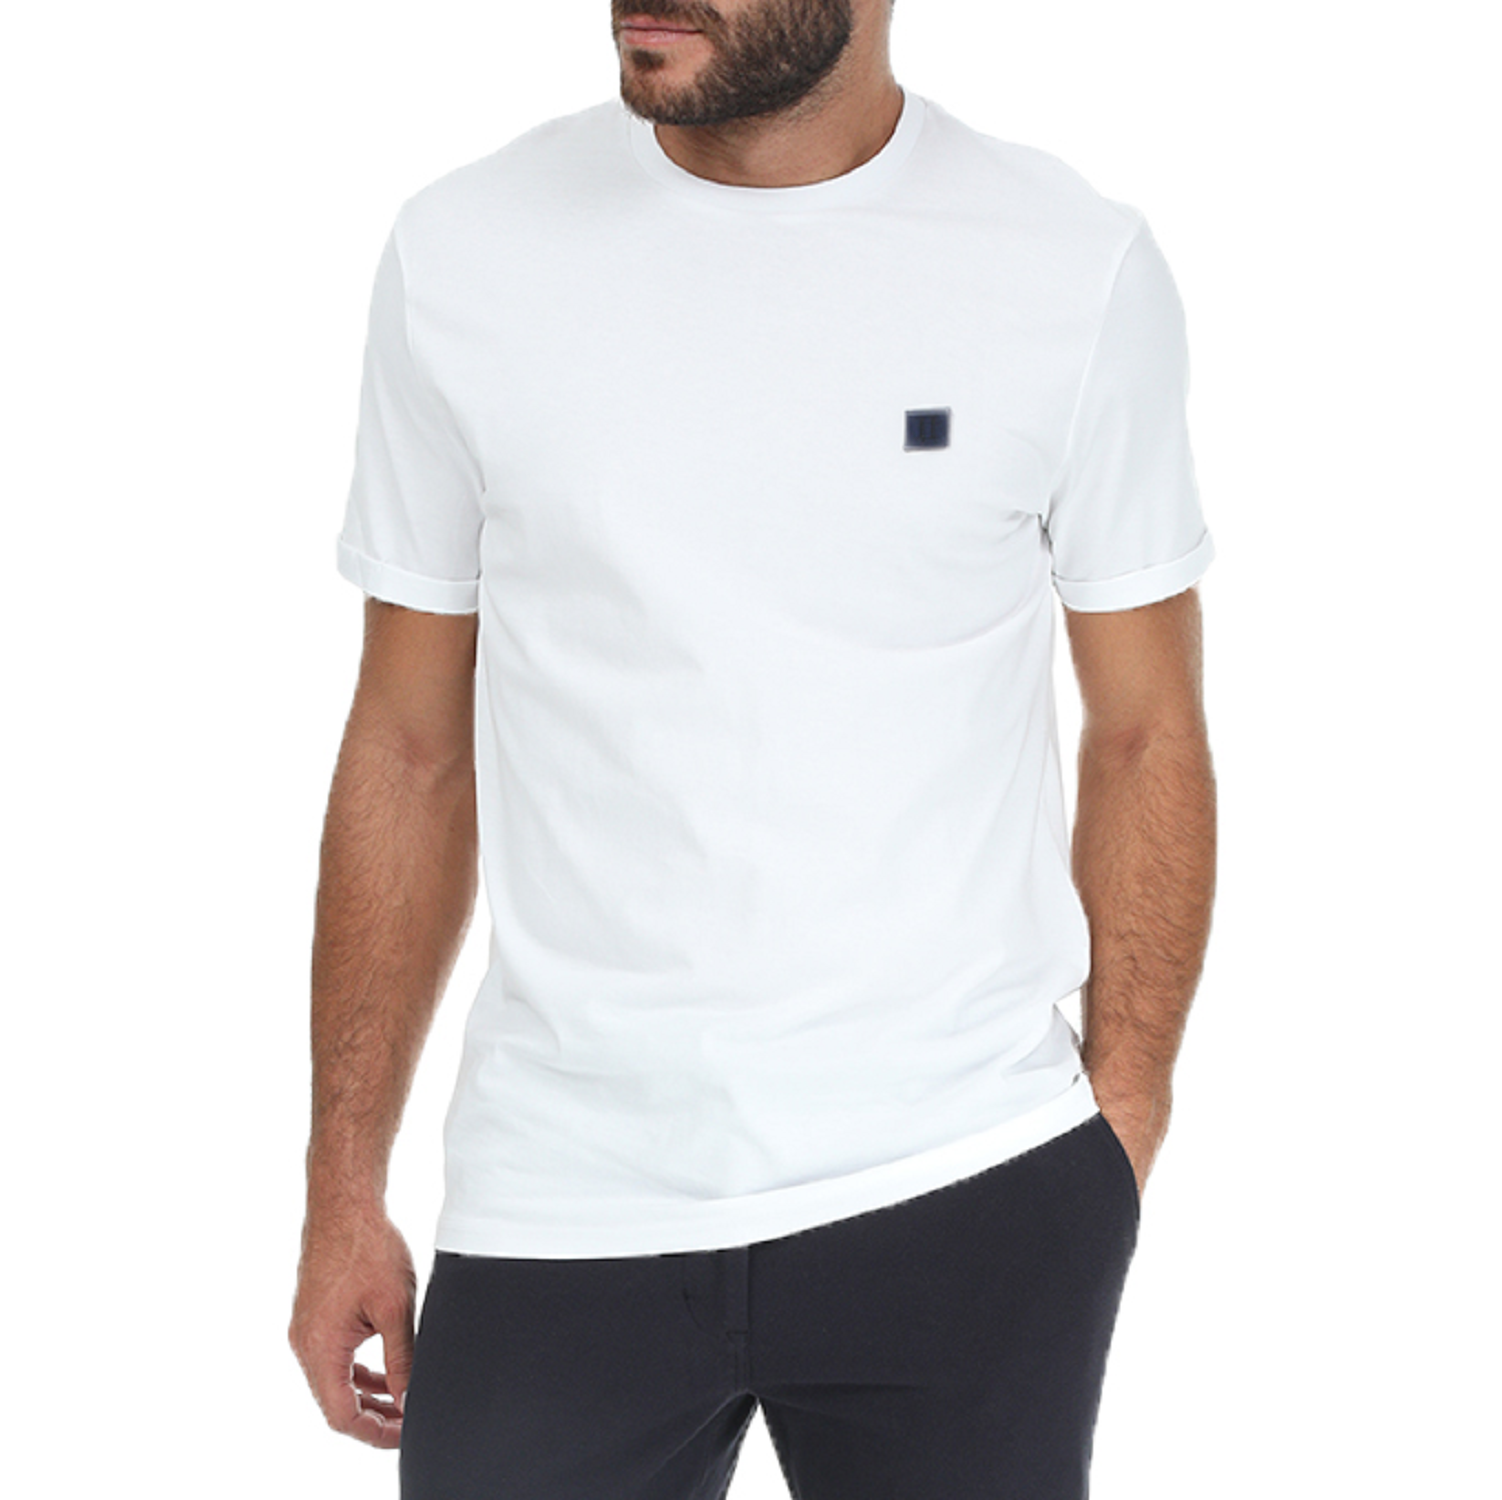 Ανδρικά/Ρούχα/Μπλούζες/Κοντομάνικες LES DEUX - Ανδρική κοντομάνικη μπλούζα LES DEUX Piece λευκή